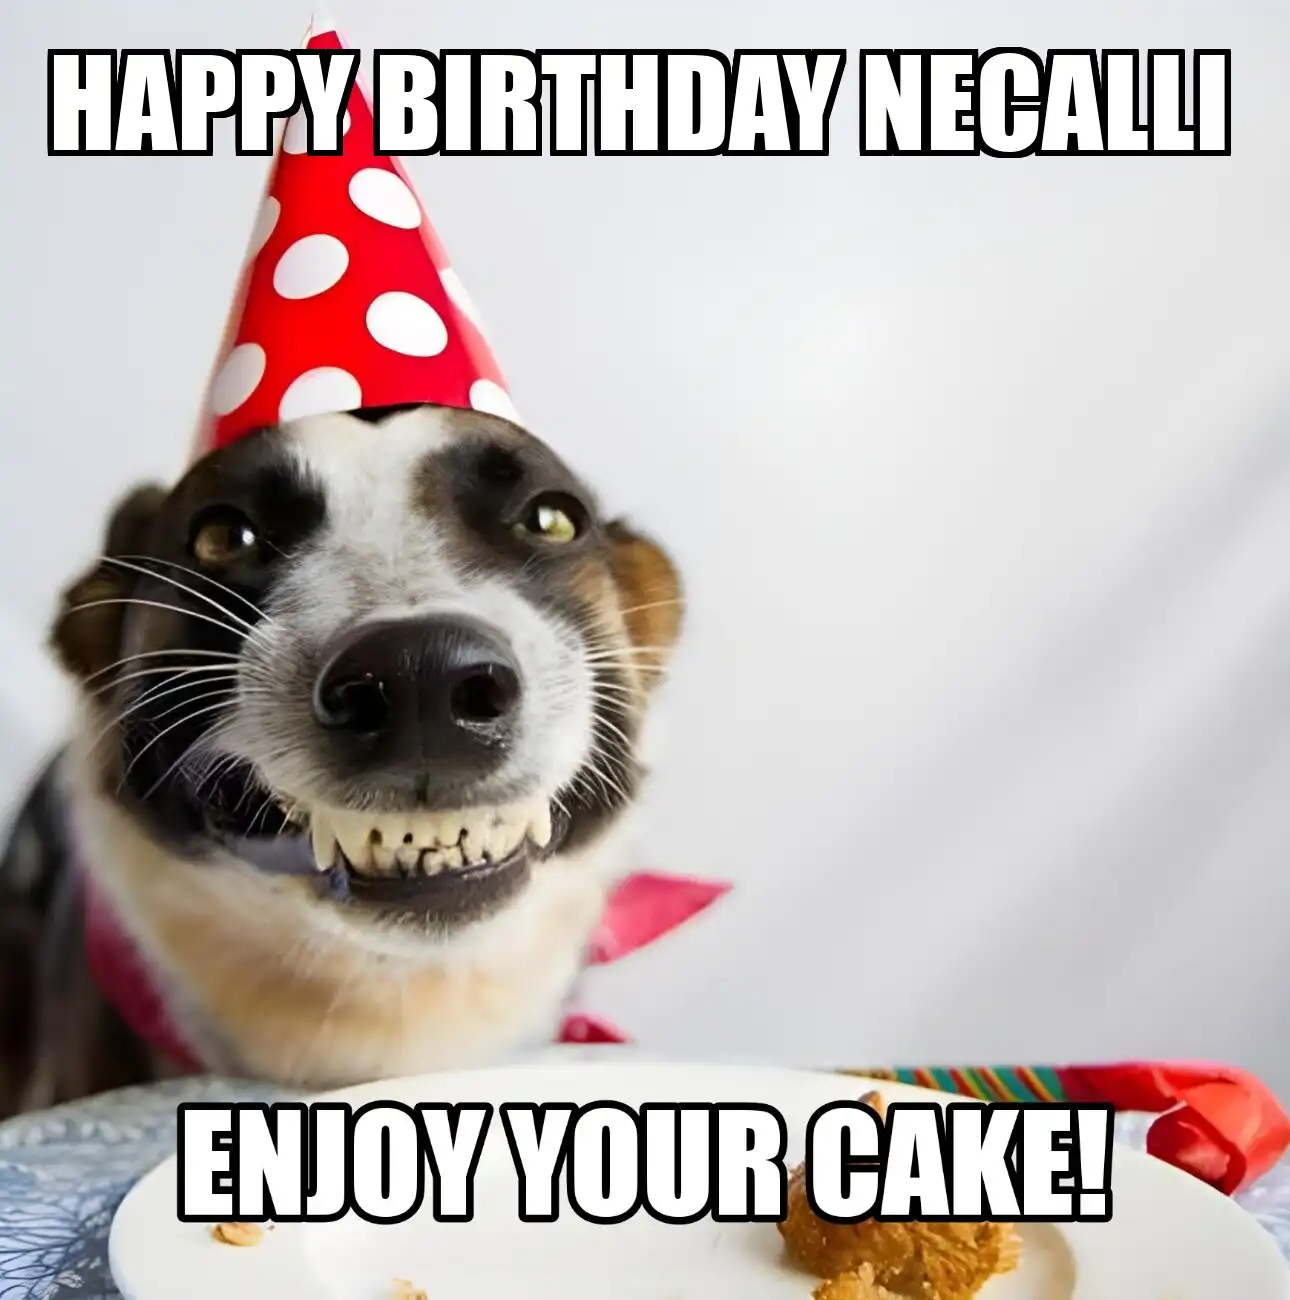 Happy Birthday Necalli Enjoy Your Cake Dog Meme